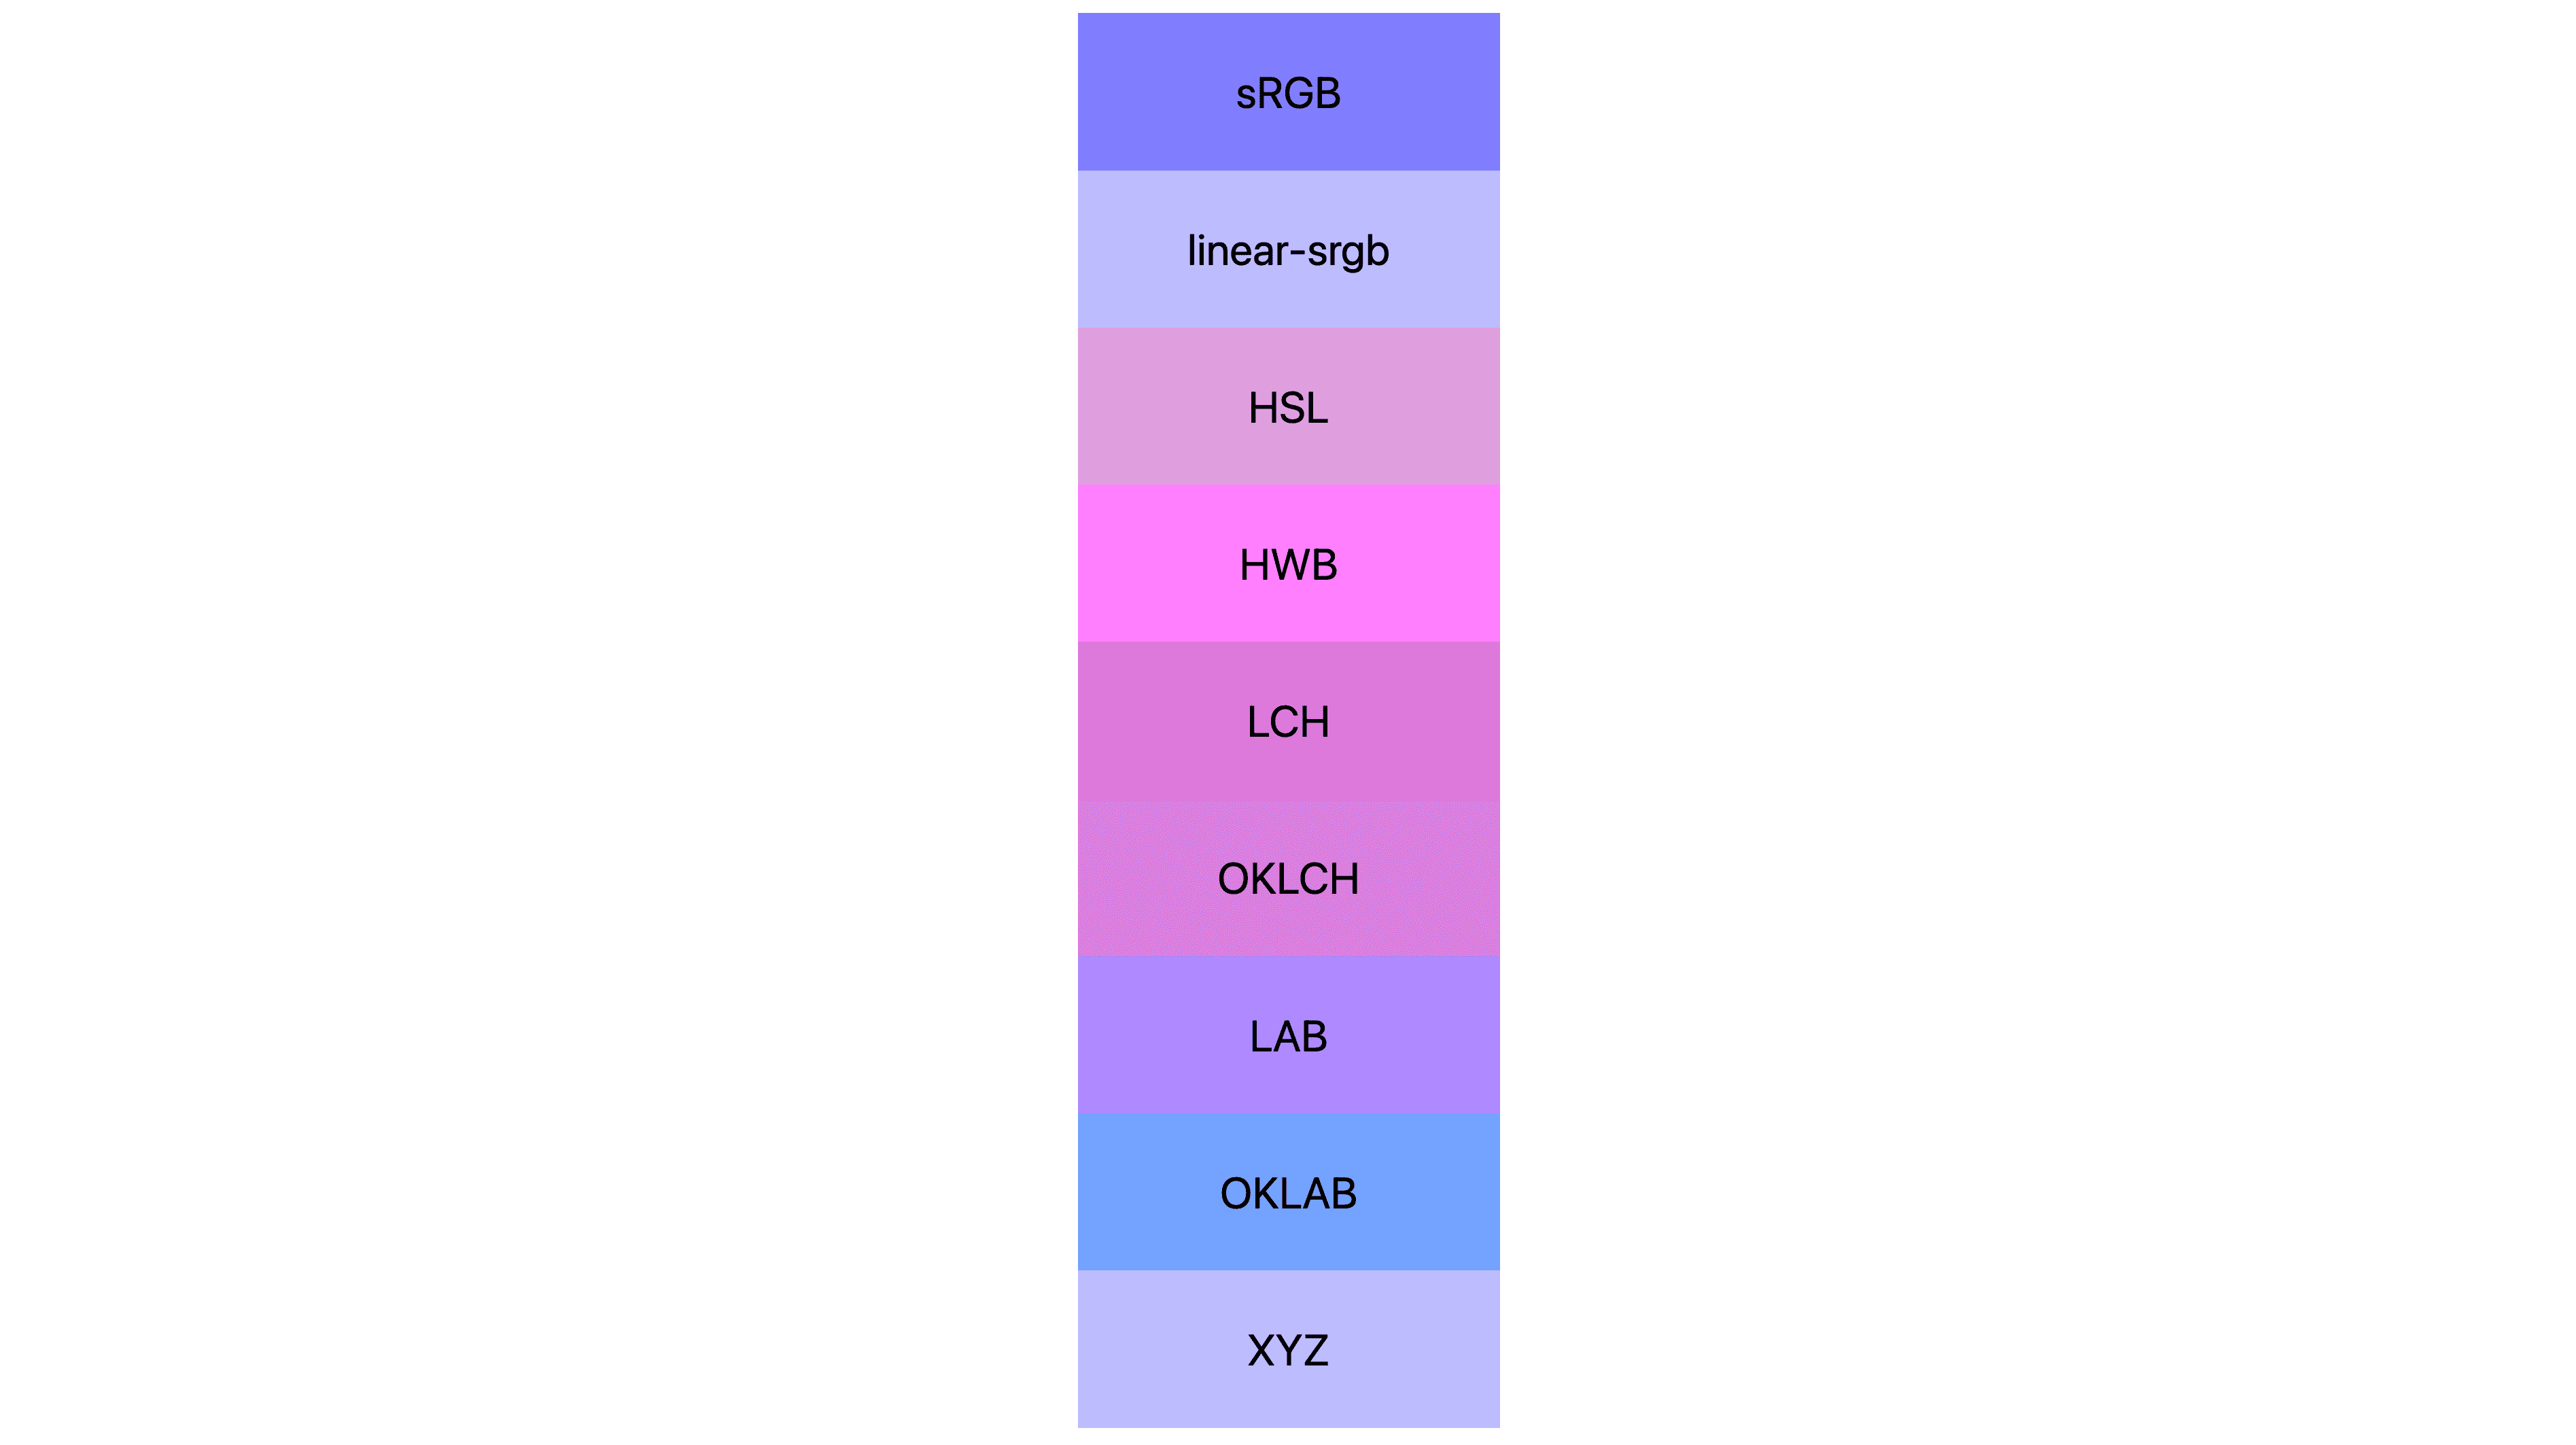 7개의 색상 공간 (srgb, linear-srgb, lch, oklch, lab, oklab, xyz)이 각각 다른 결과가 표시되어 있습니다. 대부분 분홍색이나 보라색이 되며 실제로 파란색인 곳은 거의 없습니다.